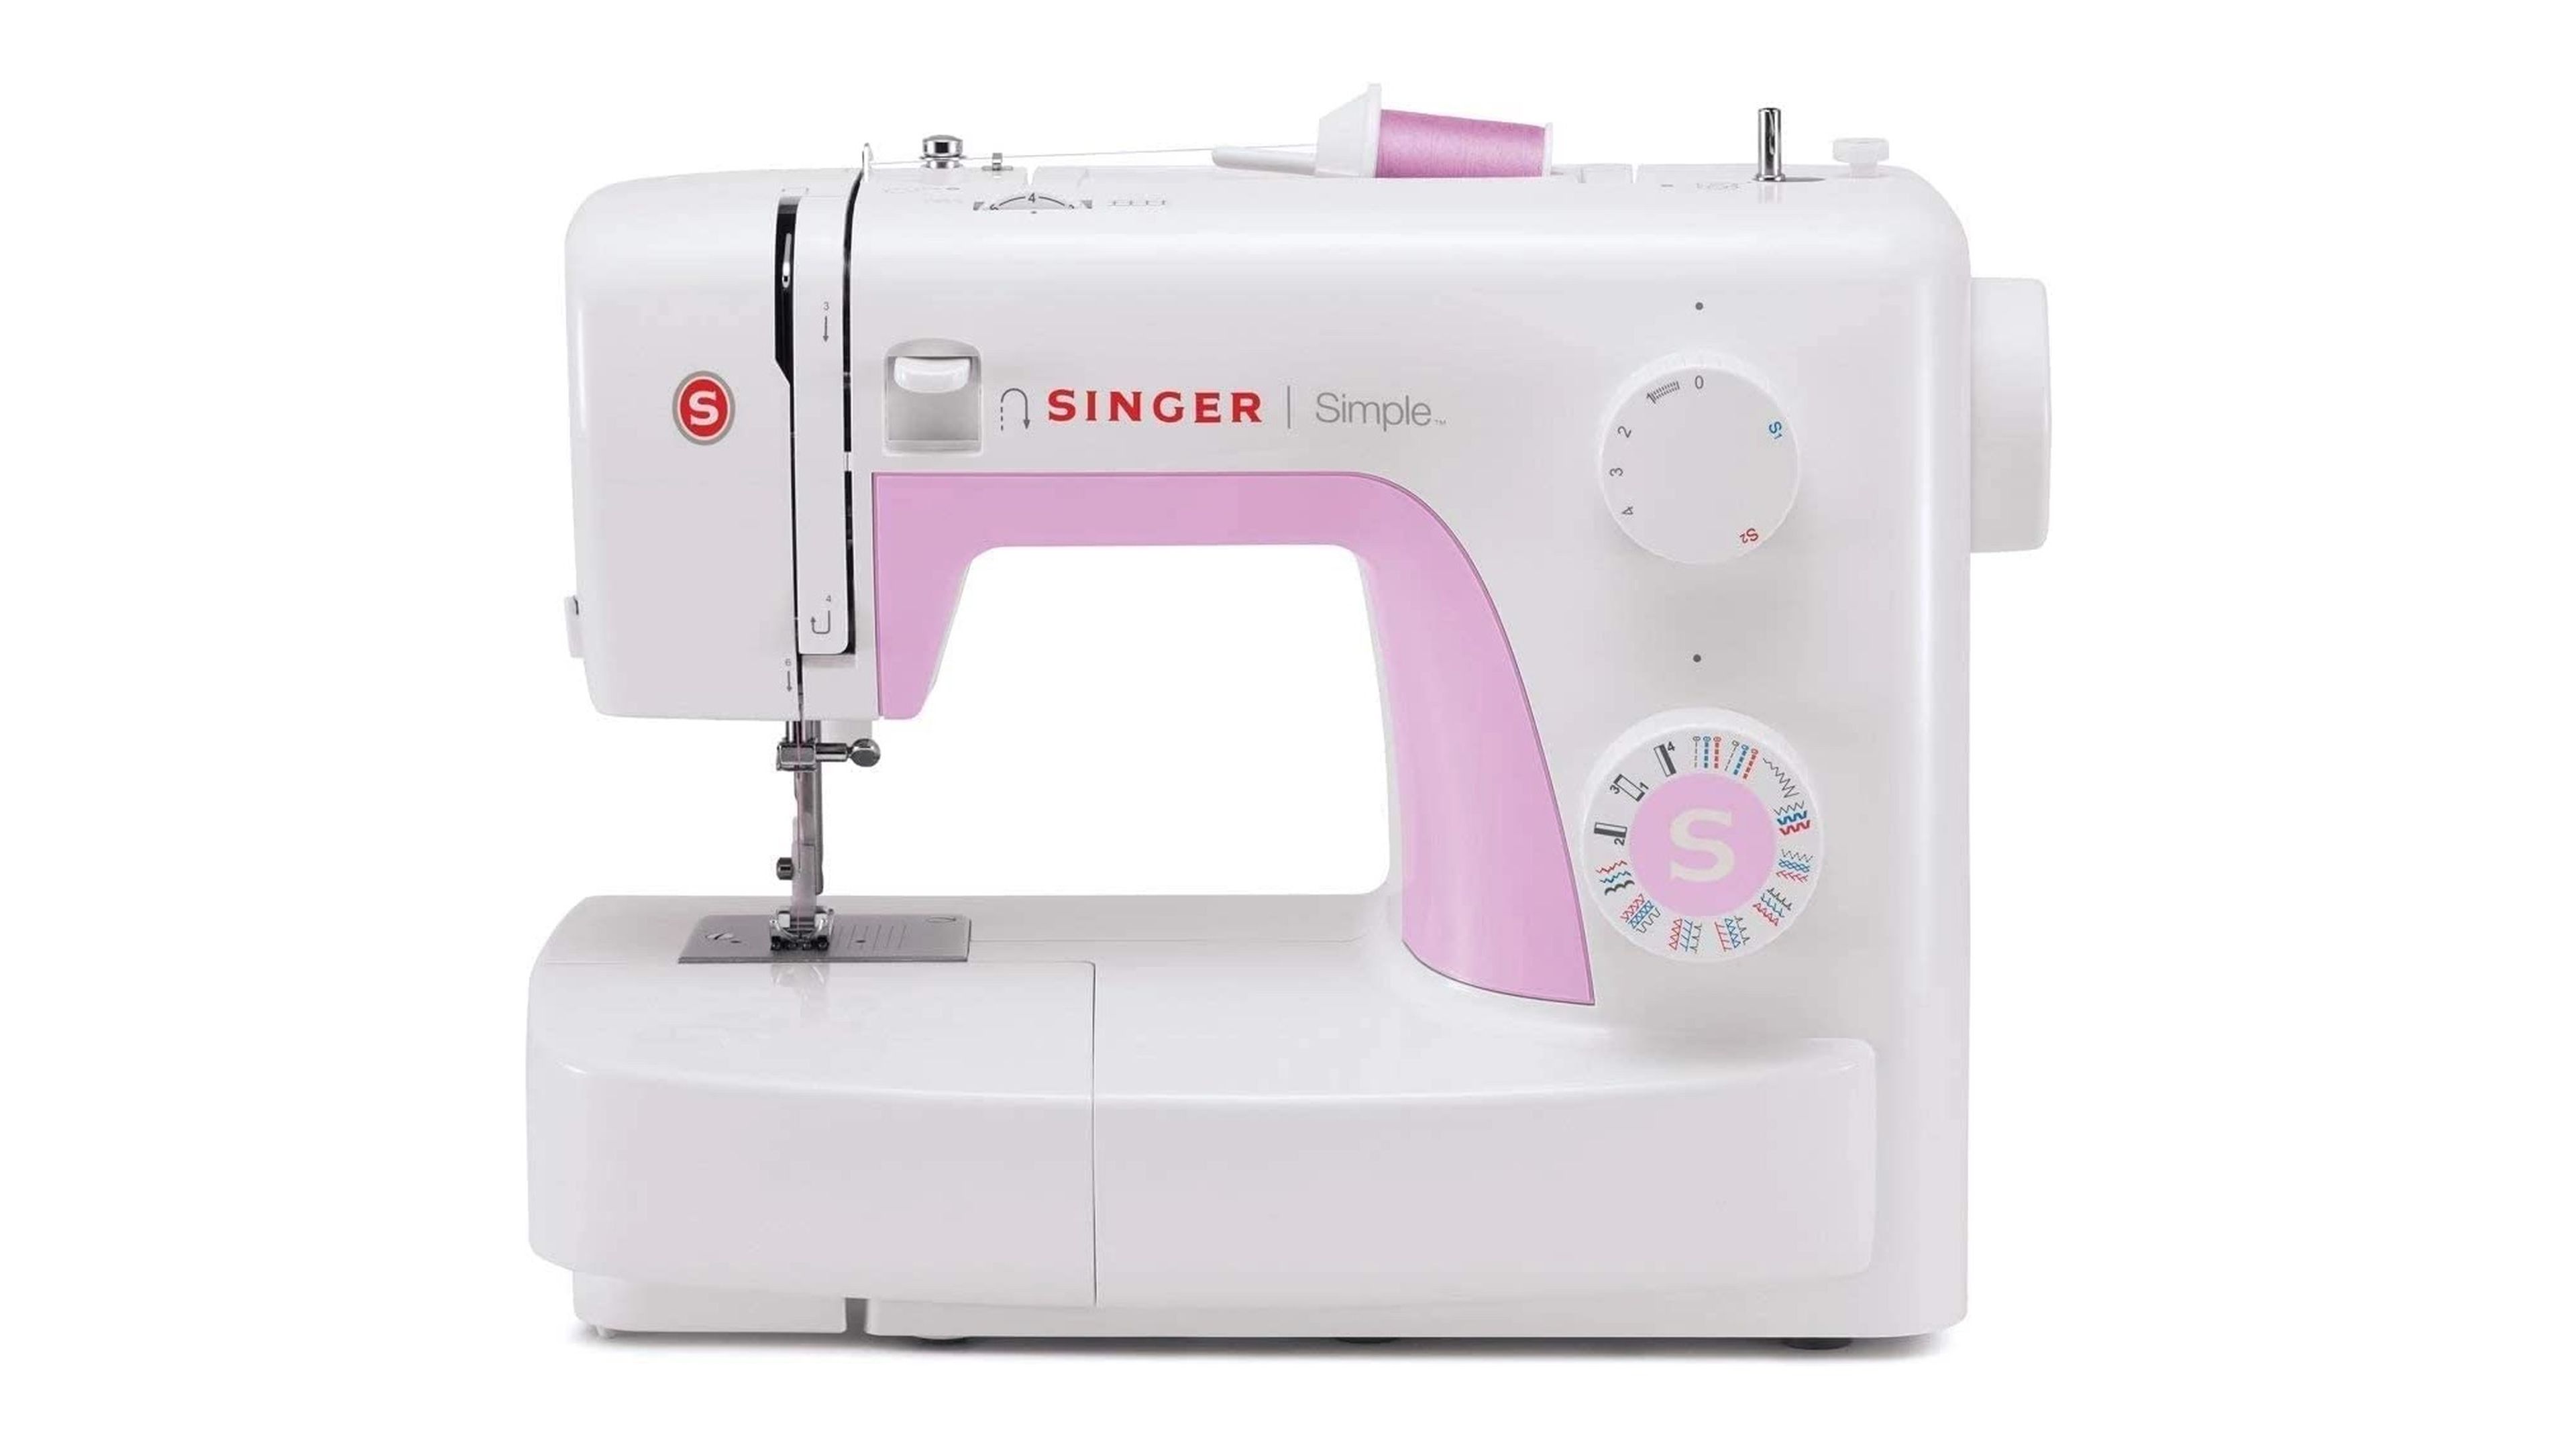 La Singer, la máquina de coser que sobrevive en tiempos de fast fashion